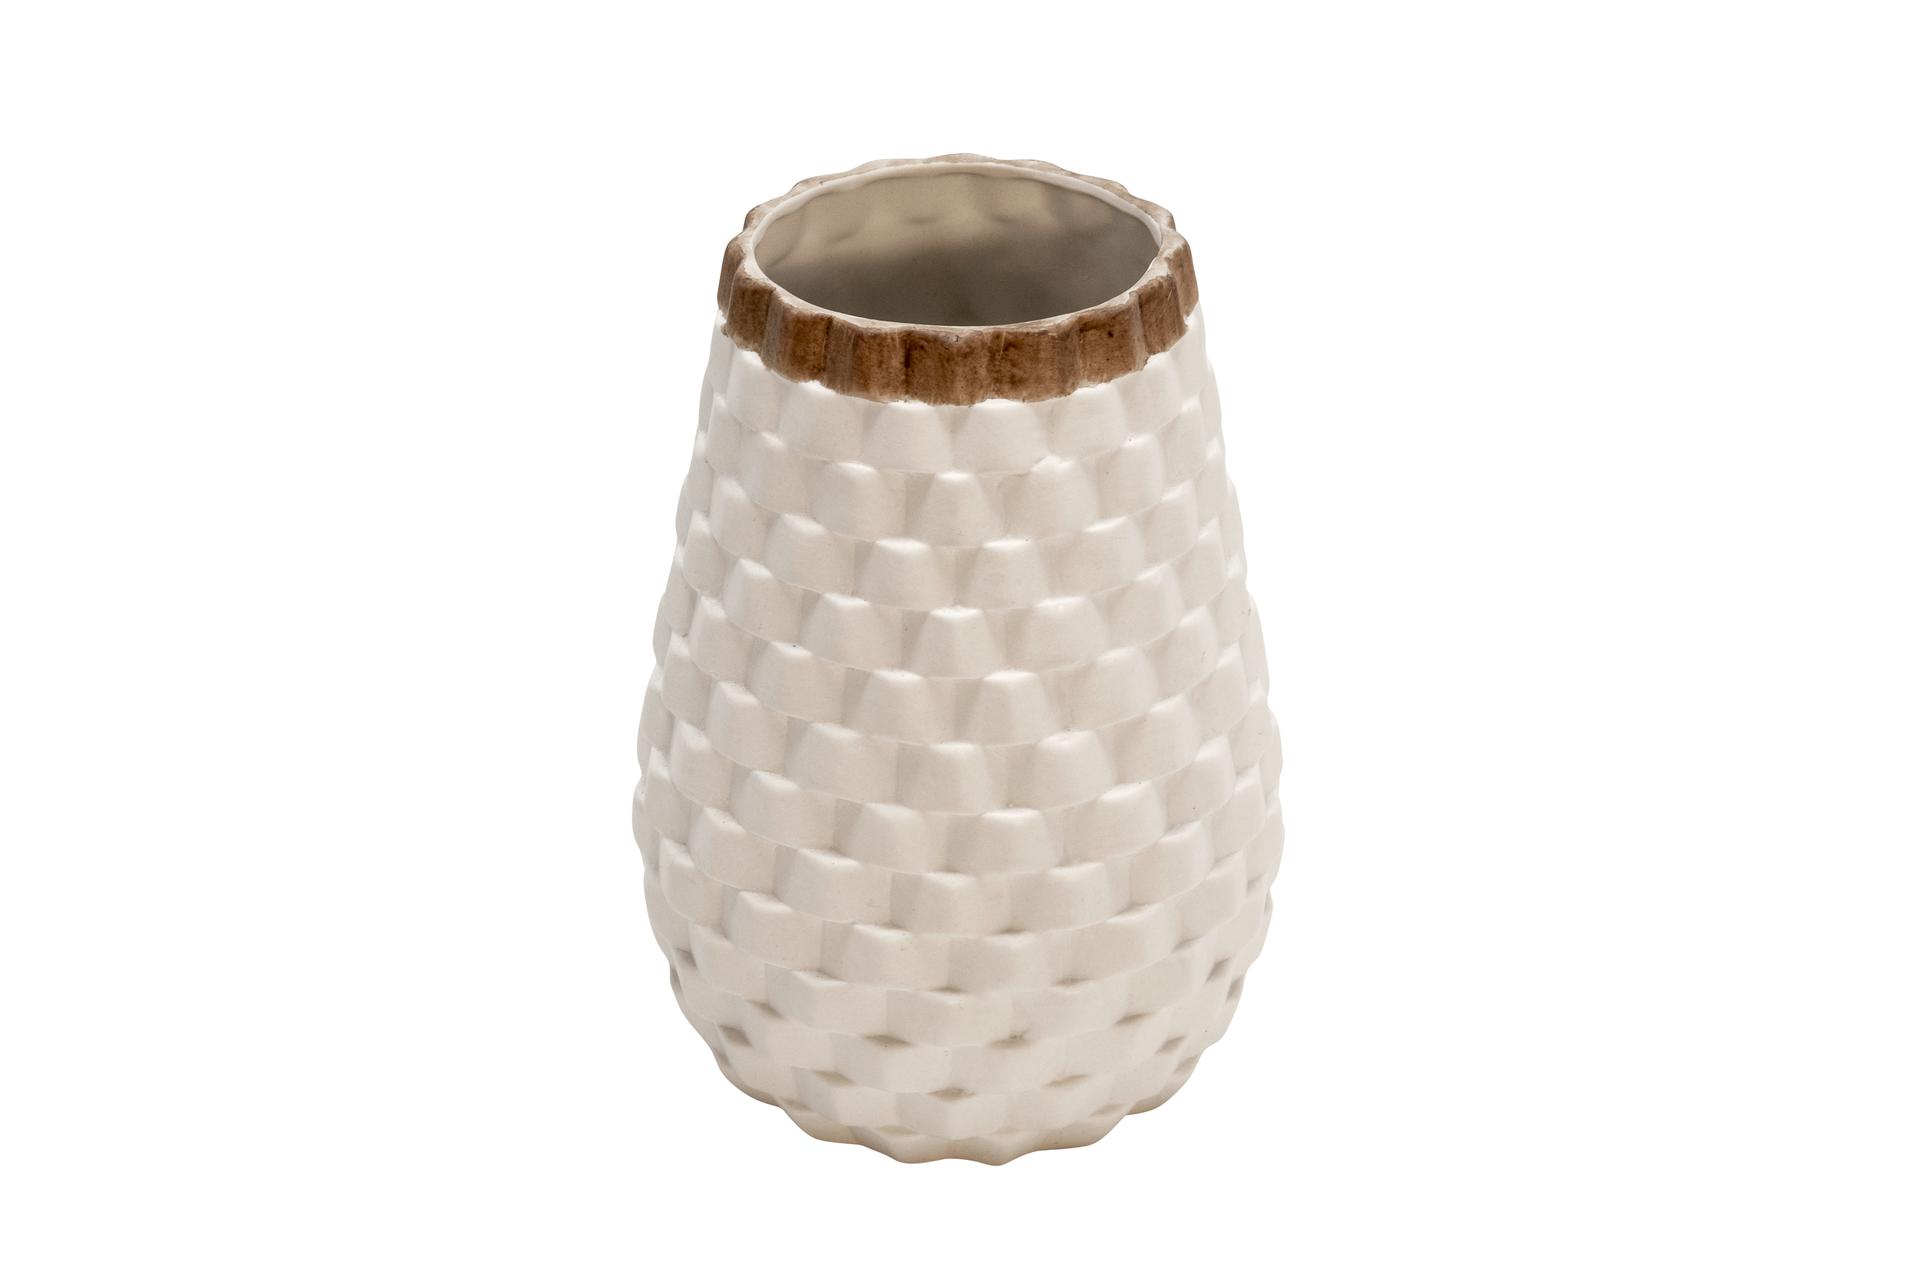 Deco 79 Contemporary Porcelain Geometric Vase, 5